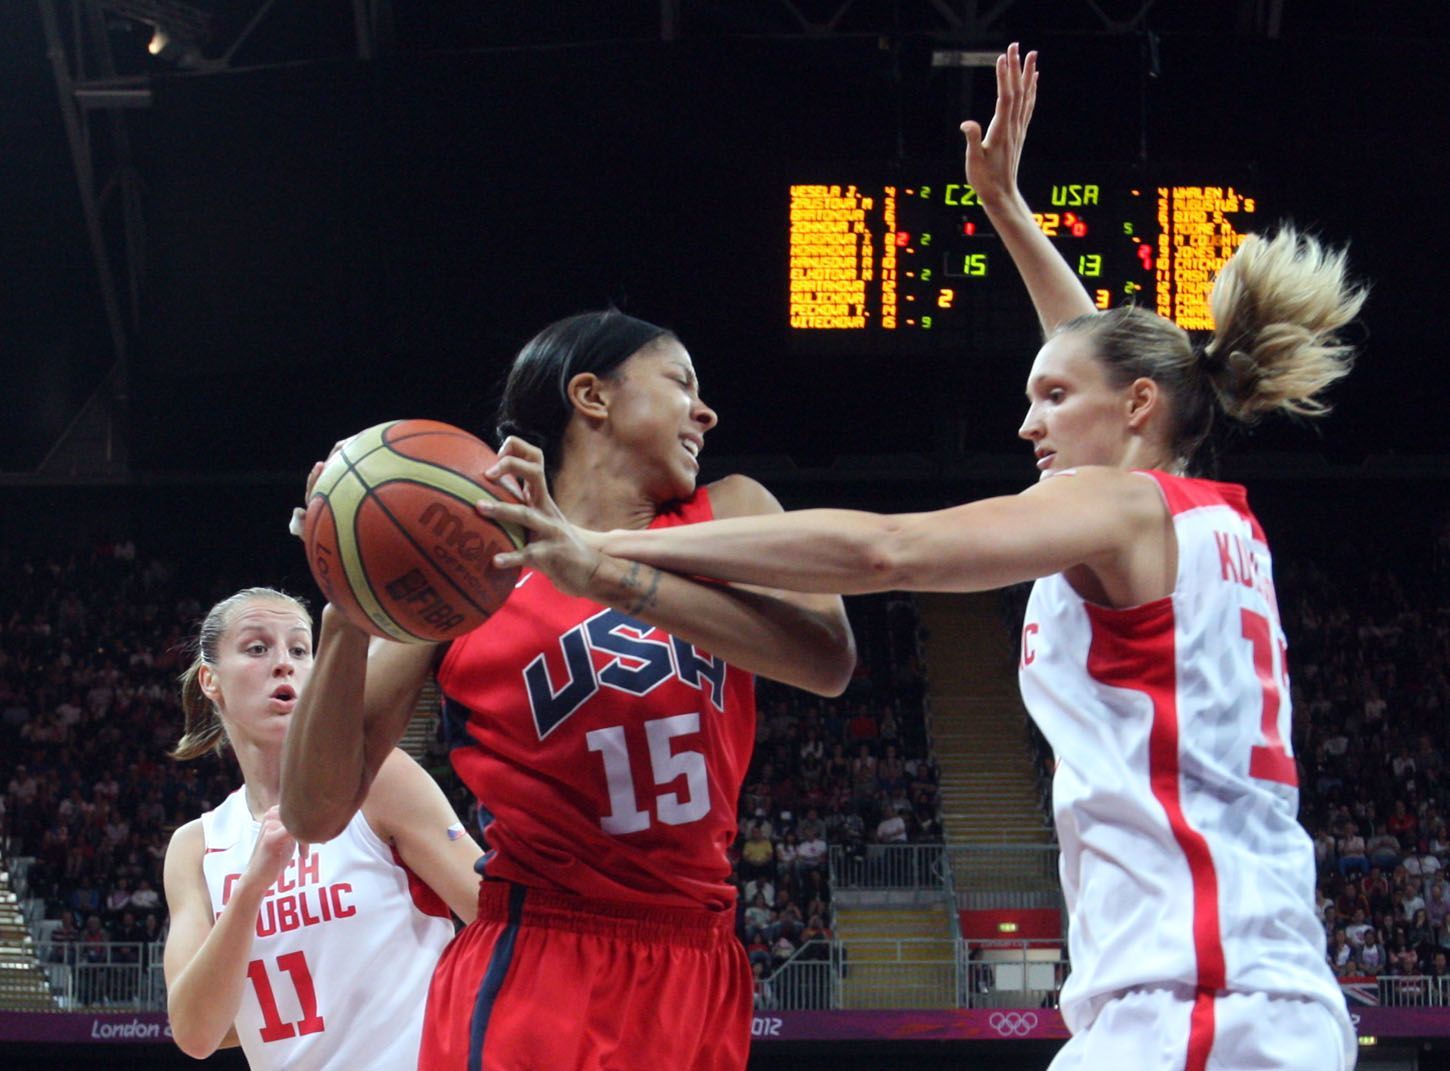 České basketbalistky Petra Kulichová (vpravo) a Kateřina Elhotová brání Američanku Candace Parkerovou v utkání skupiny A na OH 2012 v Londýně.